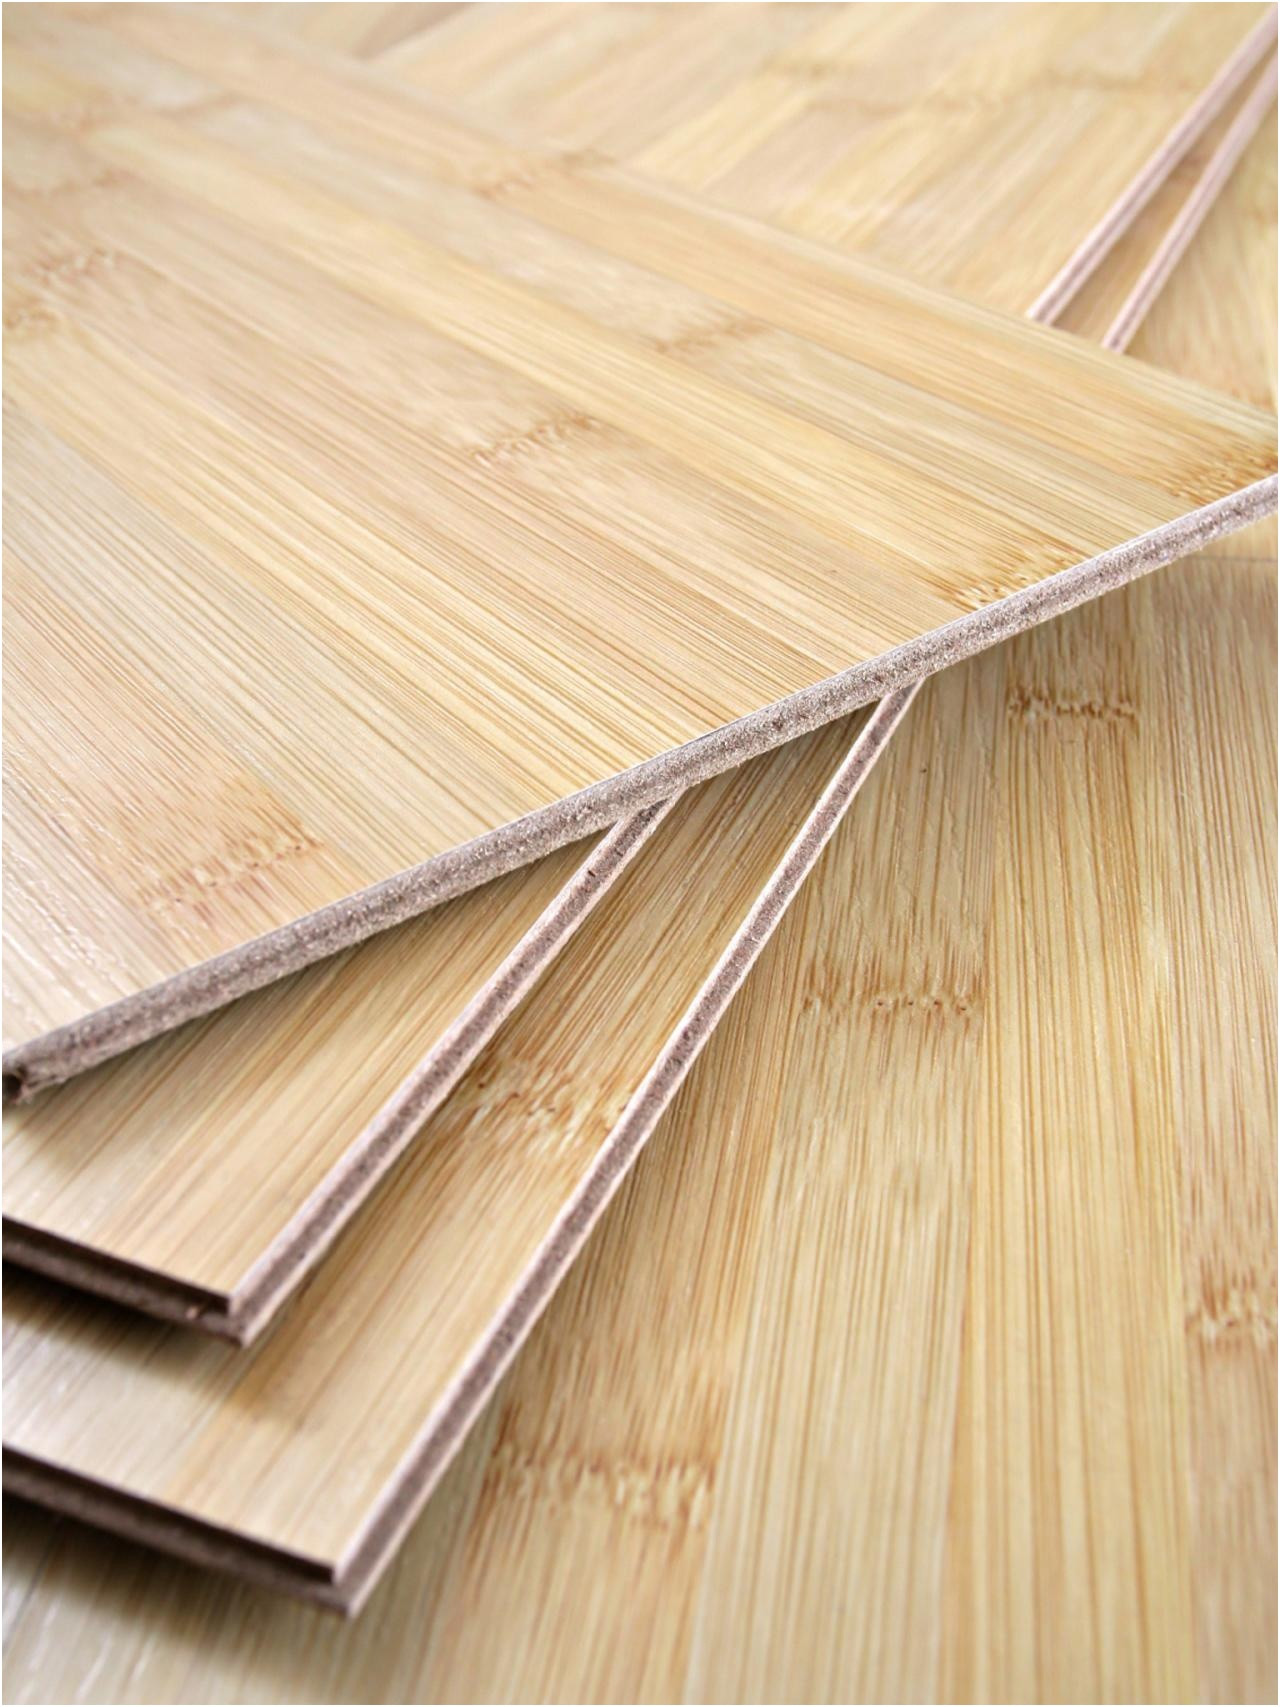 8Mm Vinyl Plank Flooring Home Depot - 8mm vinyl plank flooring home depot 1